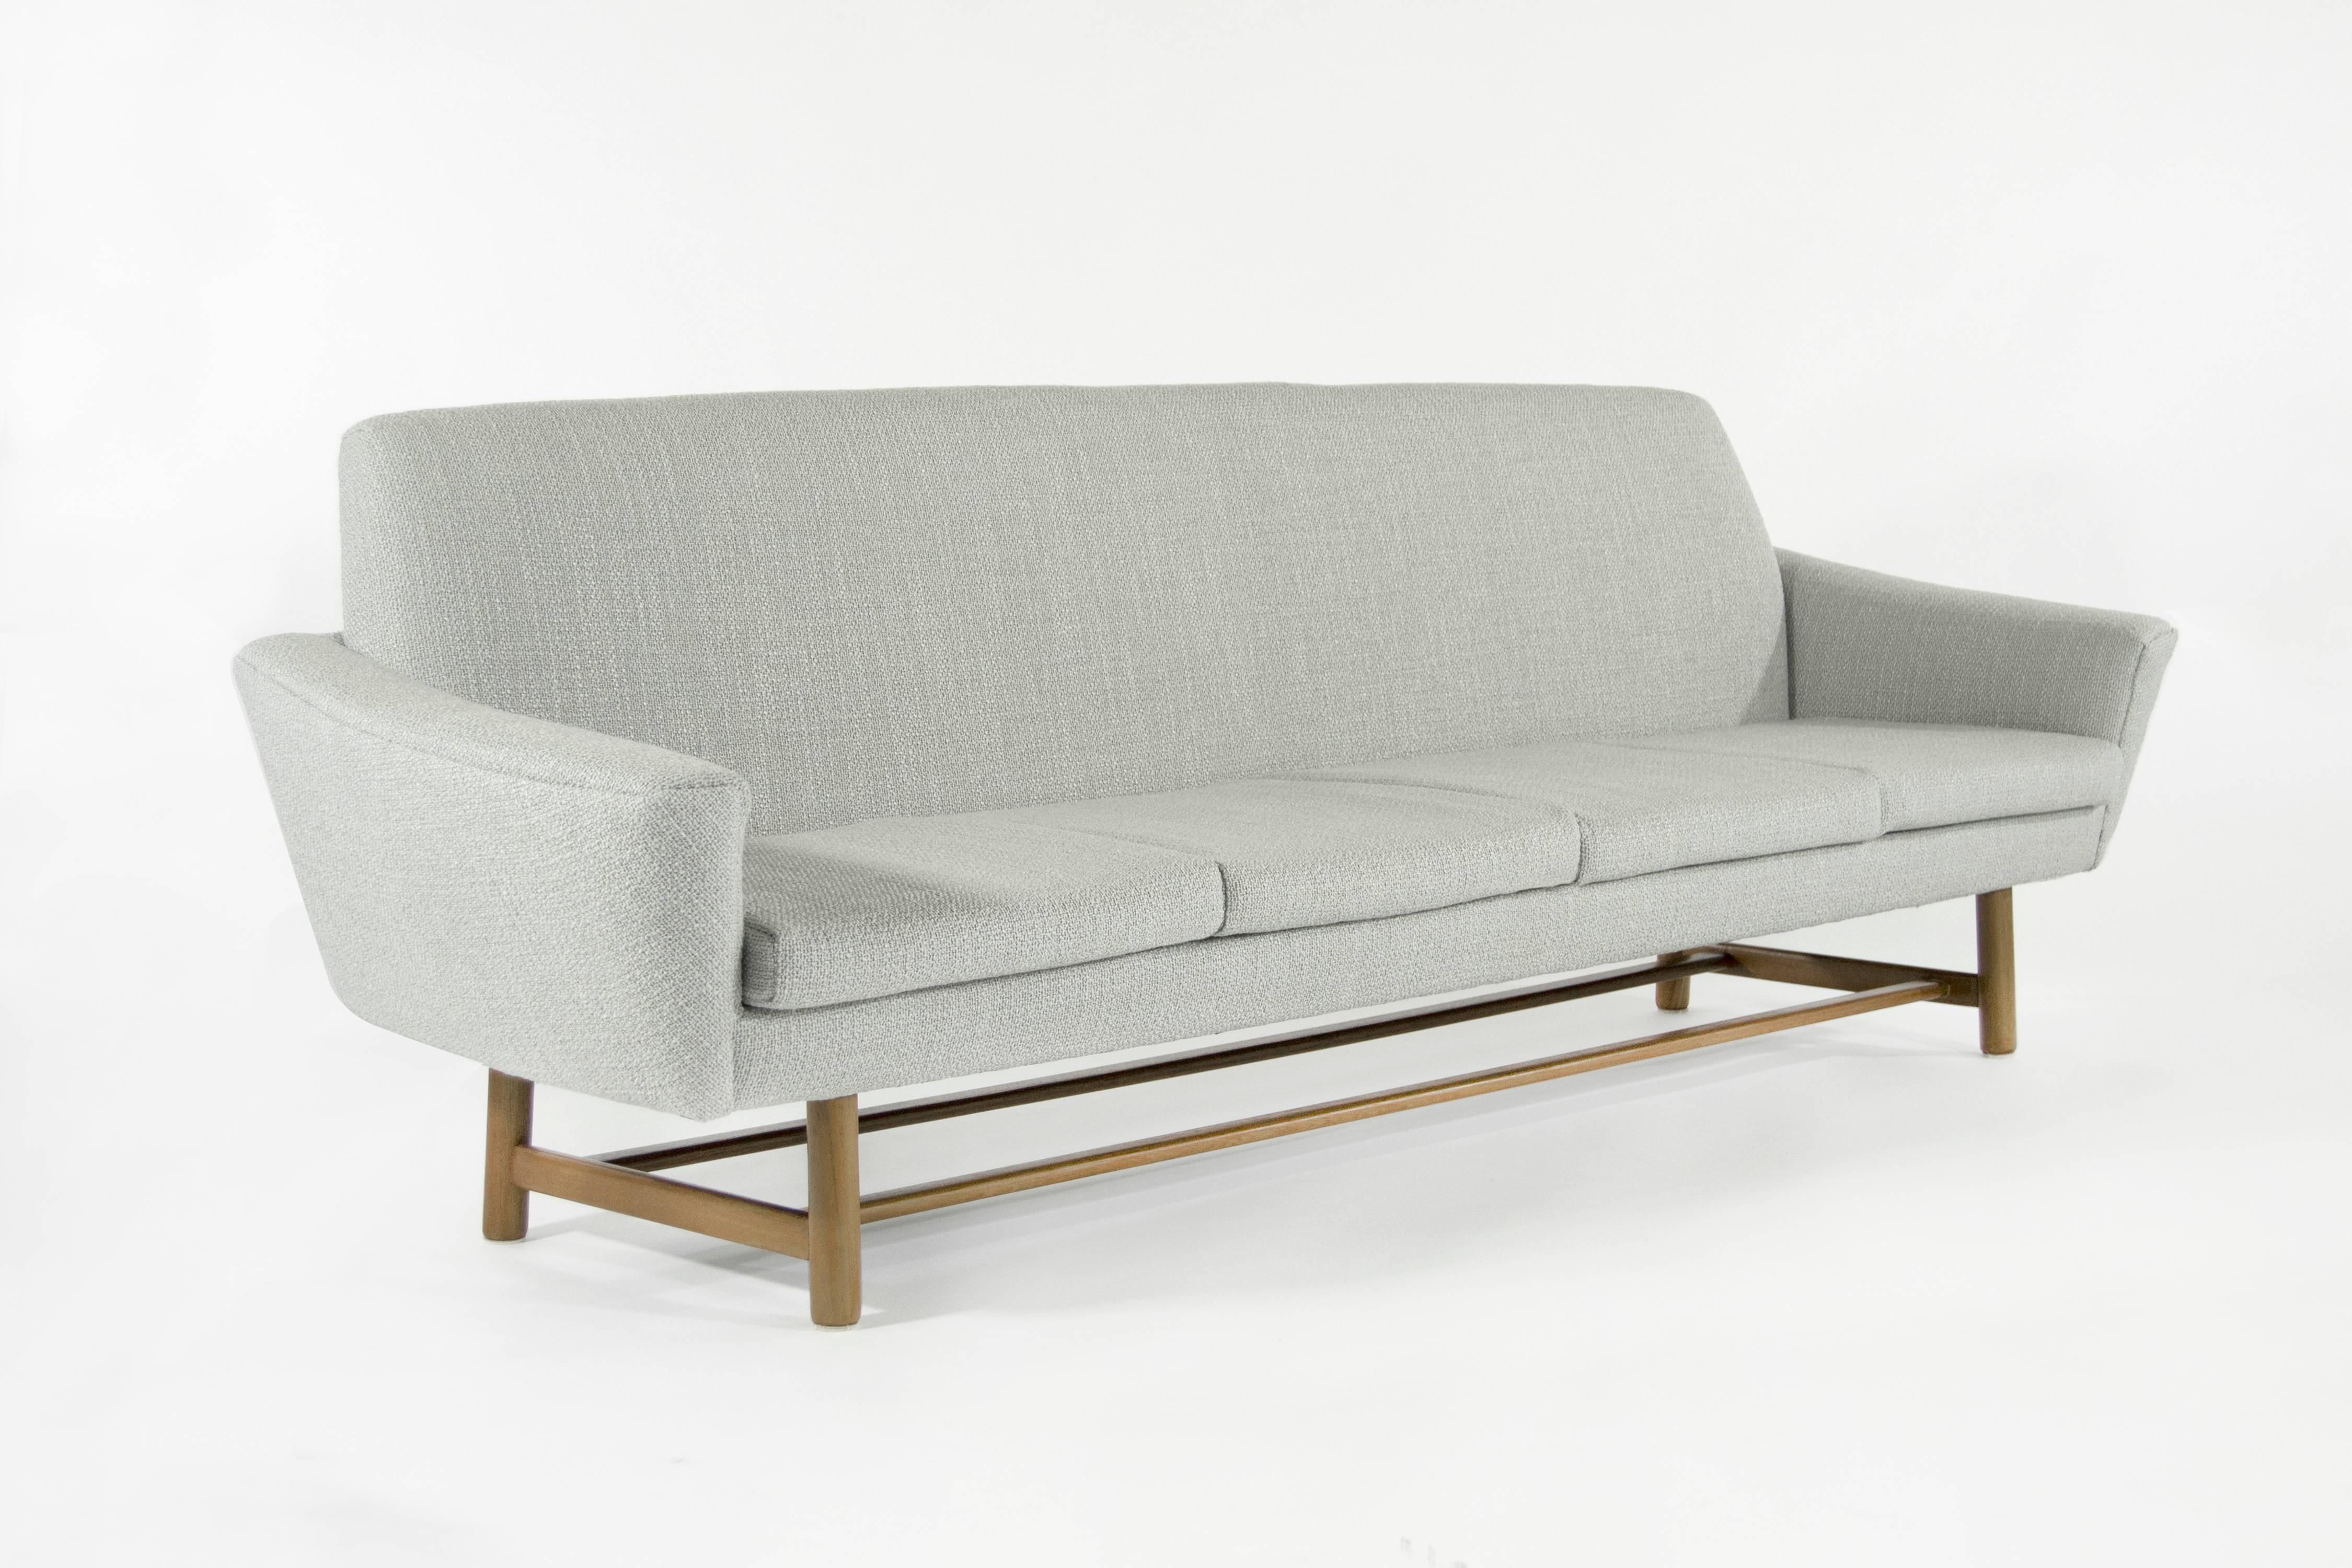 Scandinavian Modern Modernist Floating Sofa, Denmark, 1950s